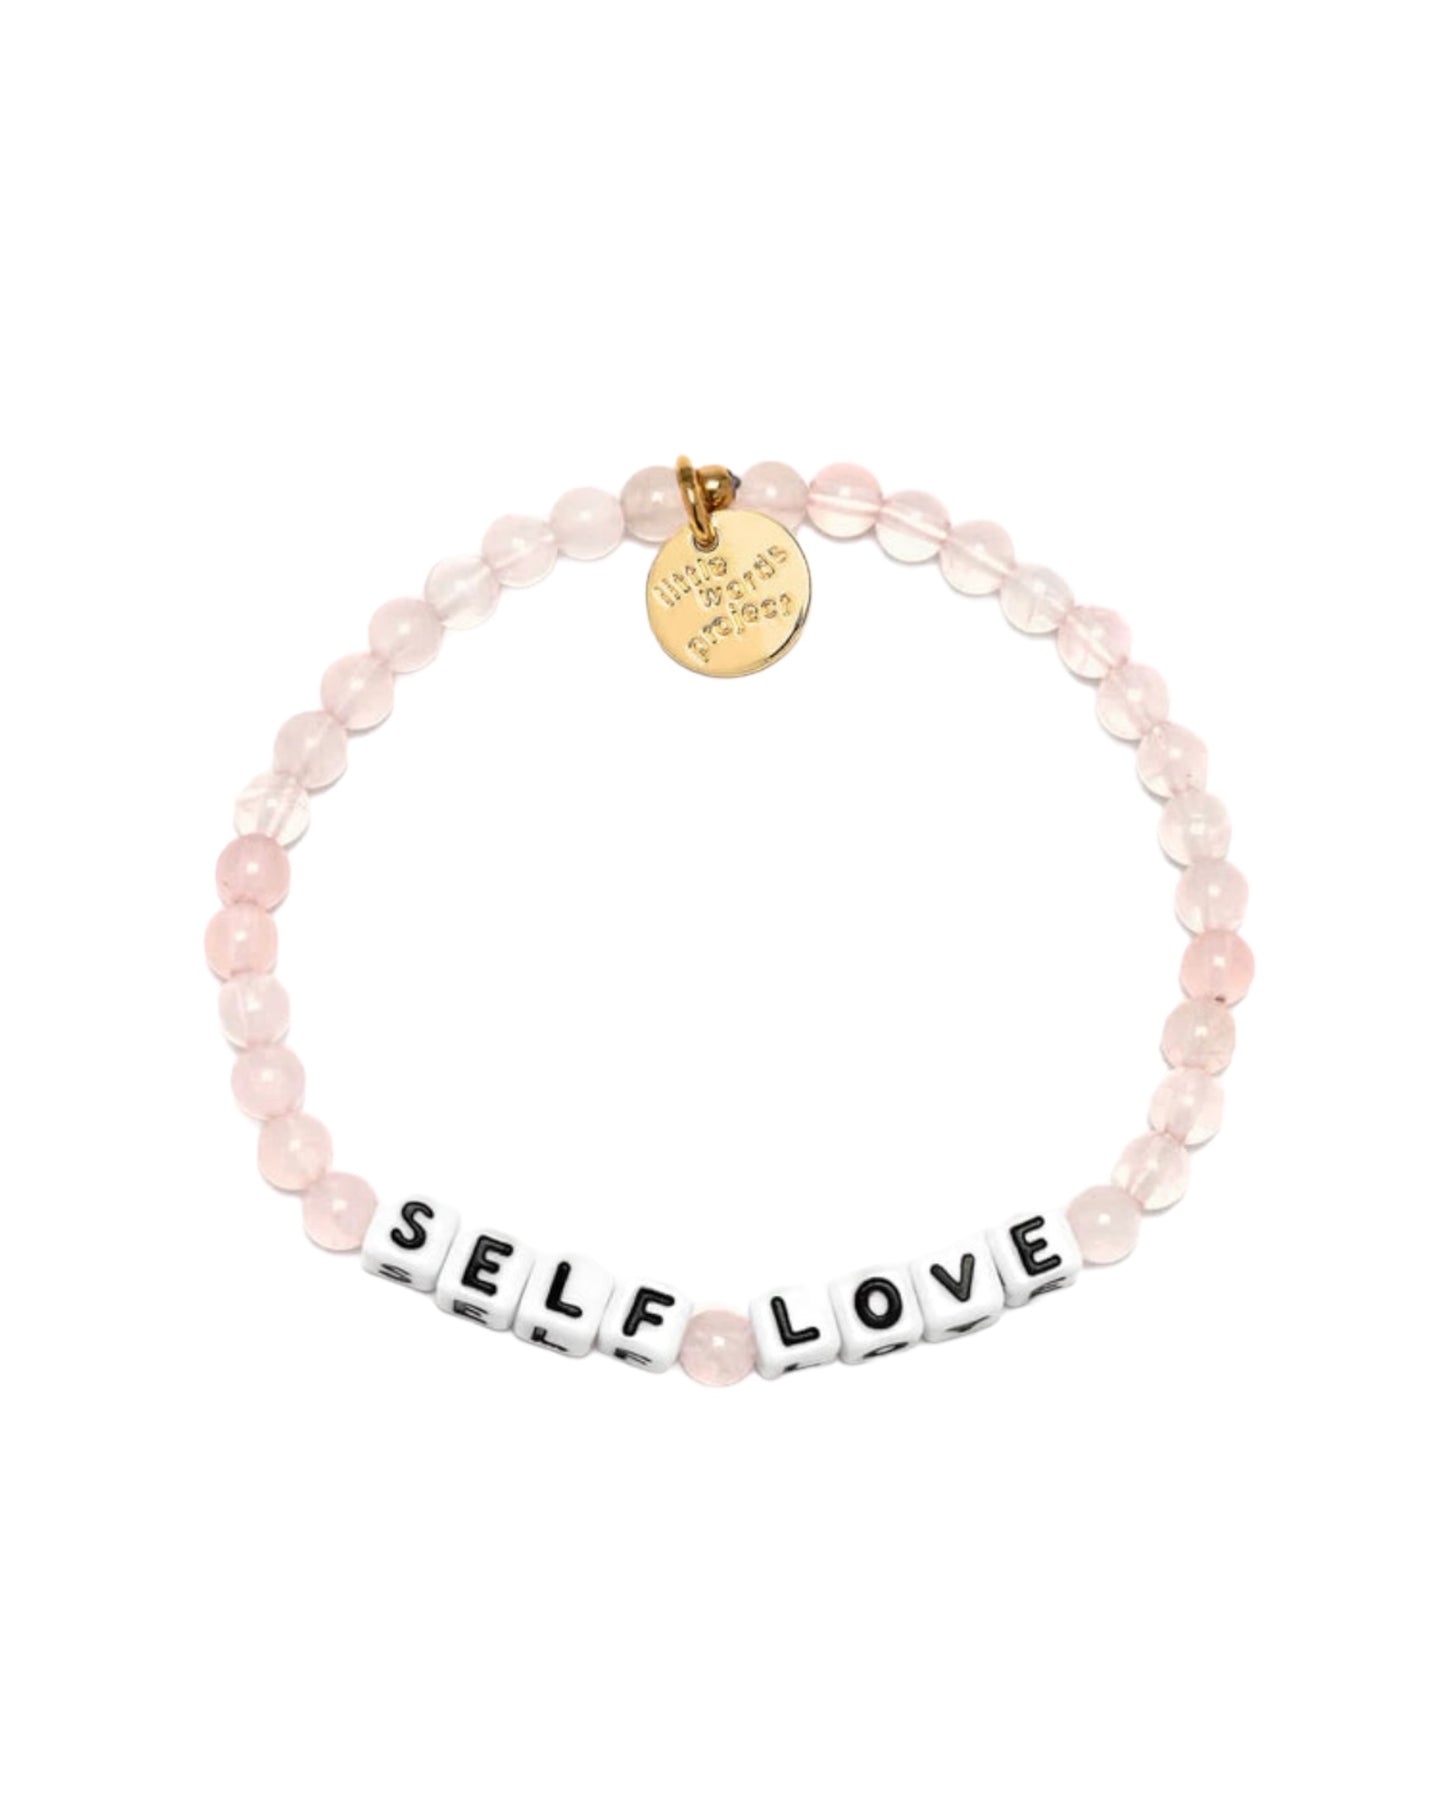 Little Words Project Self Love Bracelet Rose Quartz